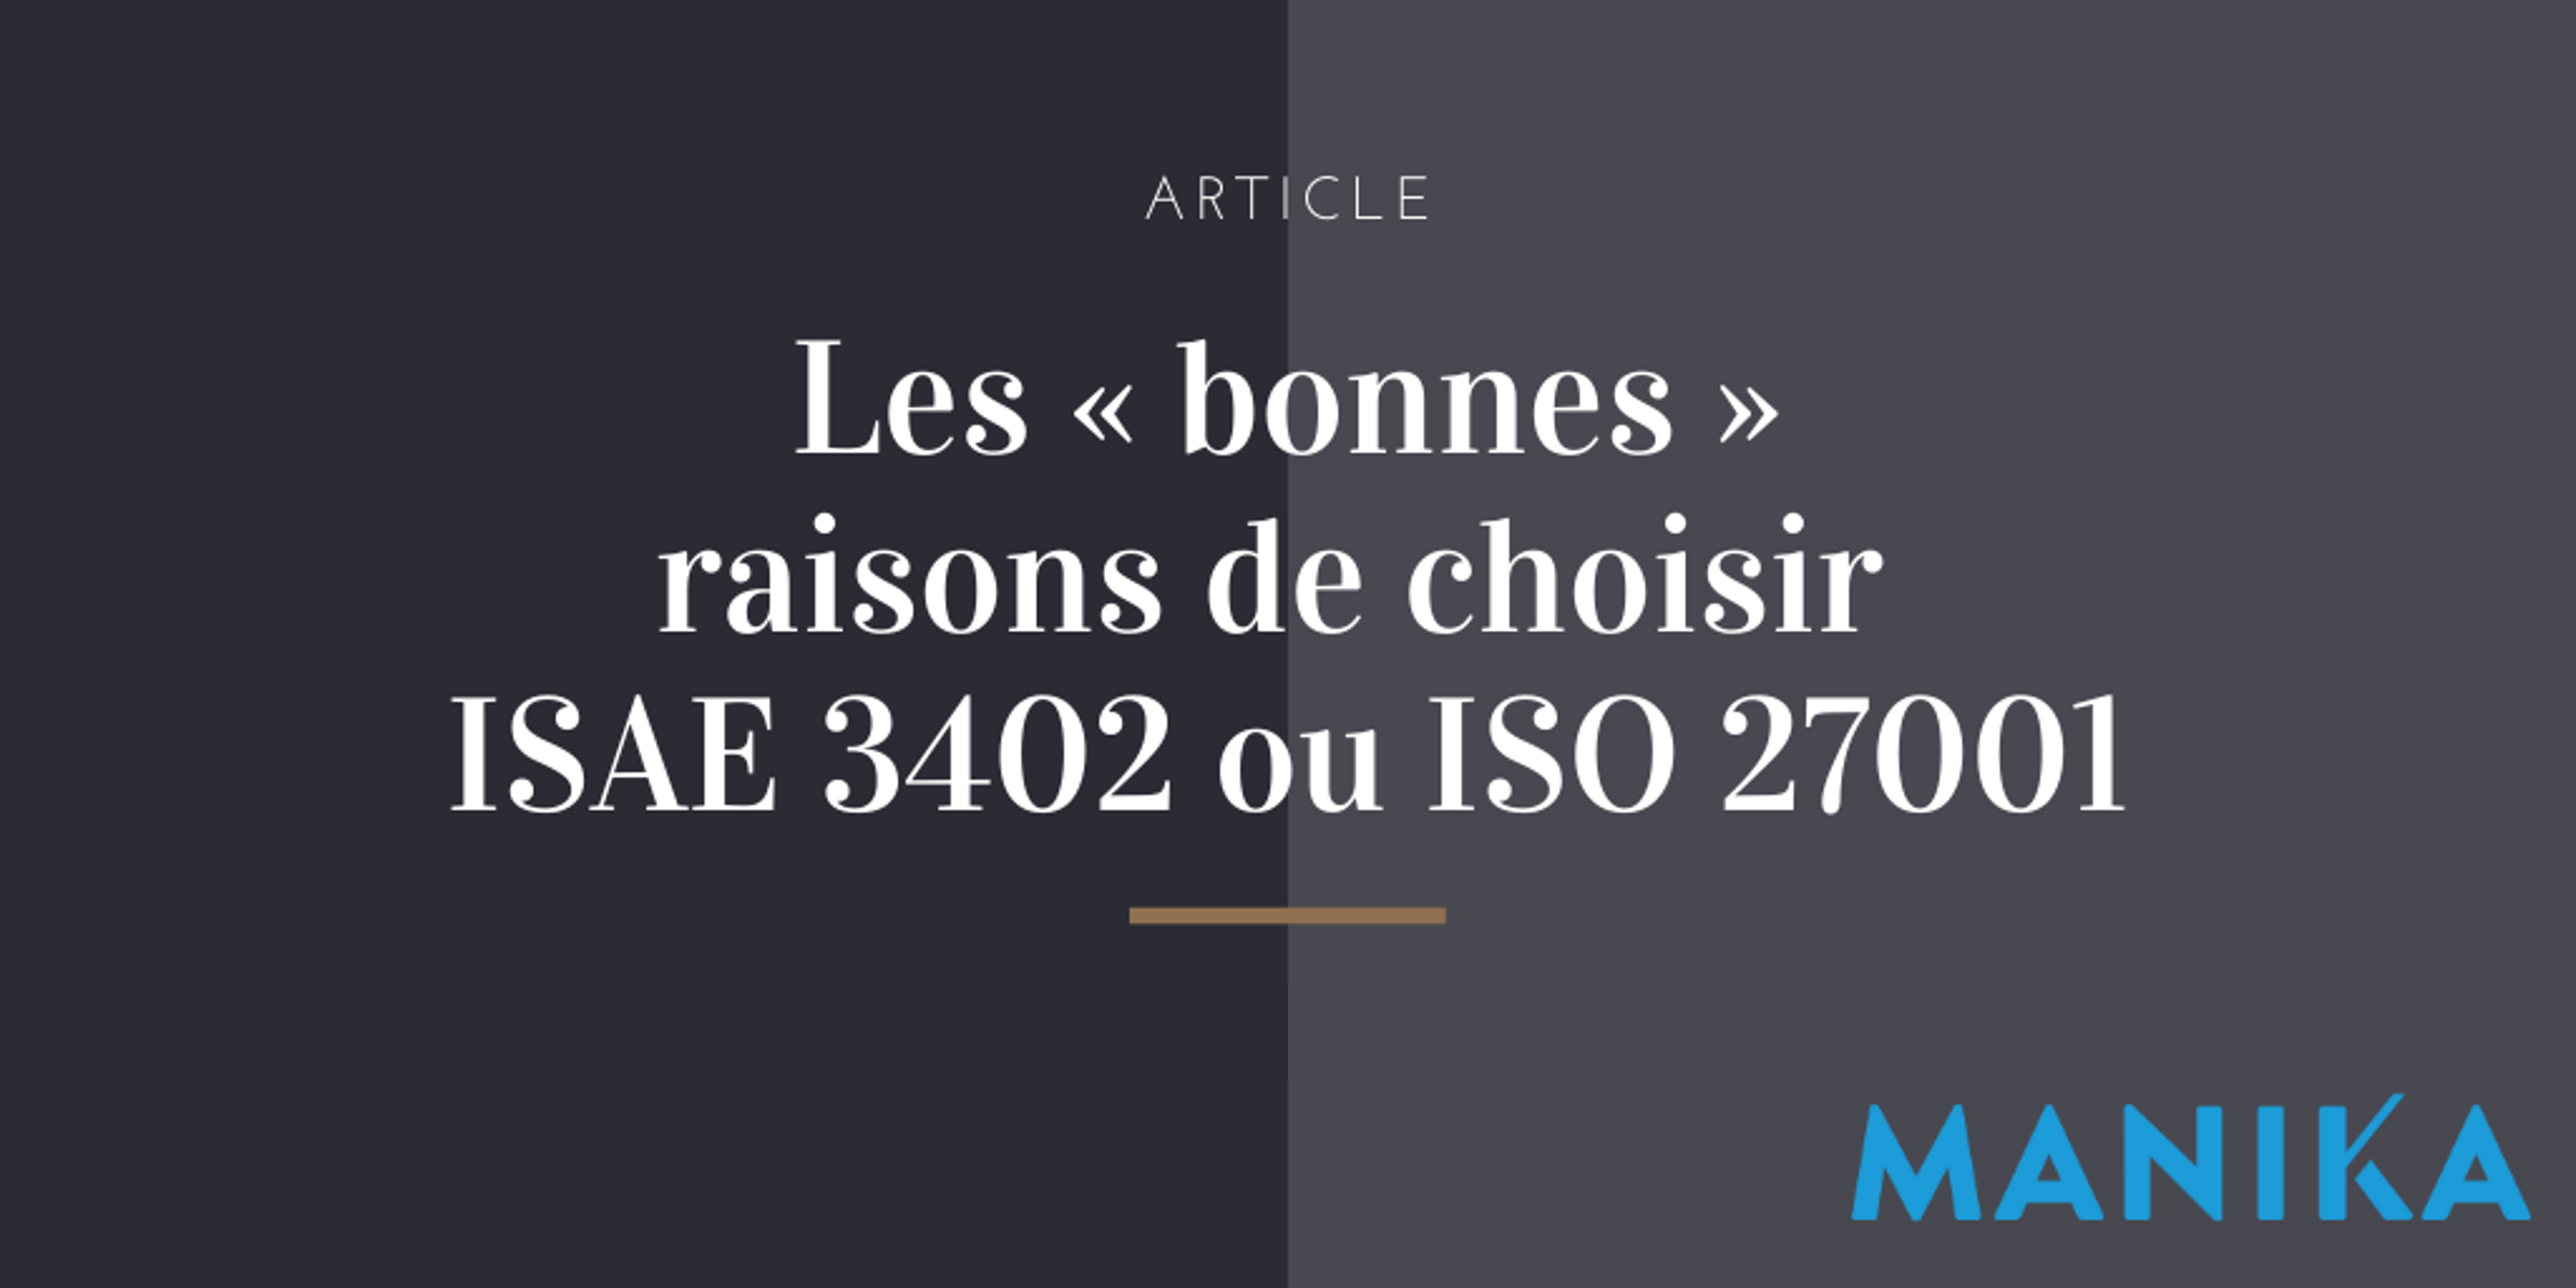 [Article] Les « bonnes » raisons de choisir ISAE 3402 ou ISO 27001